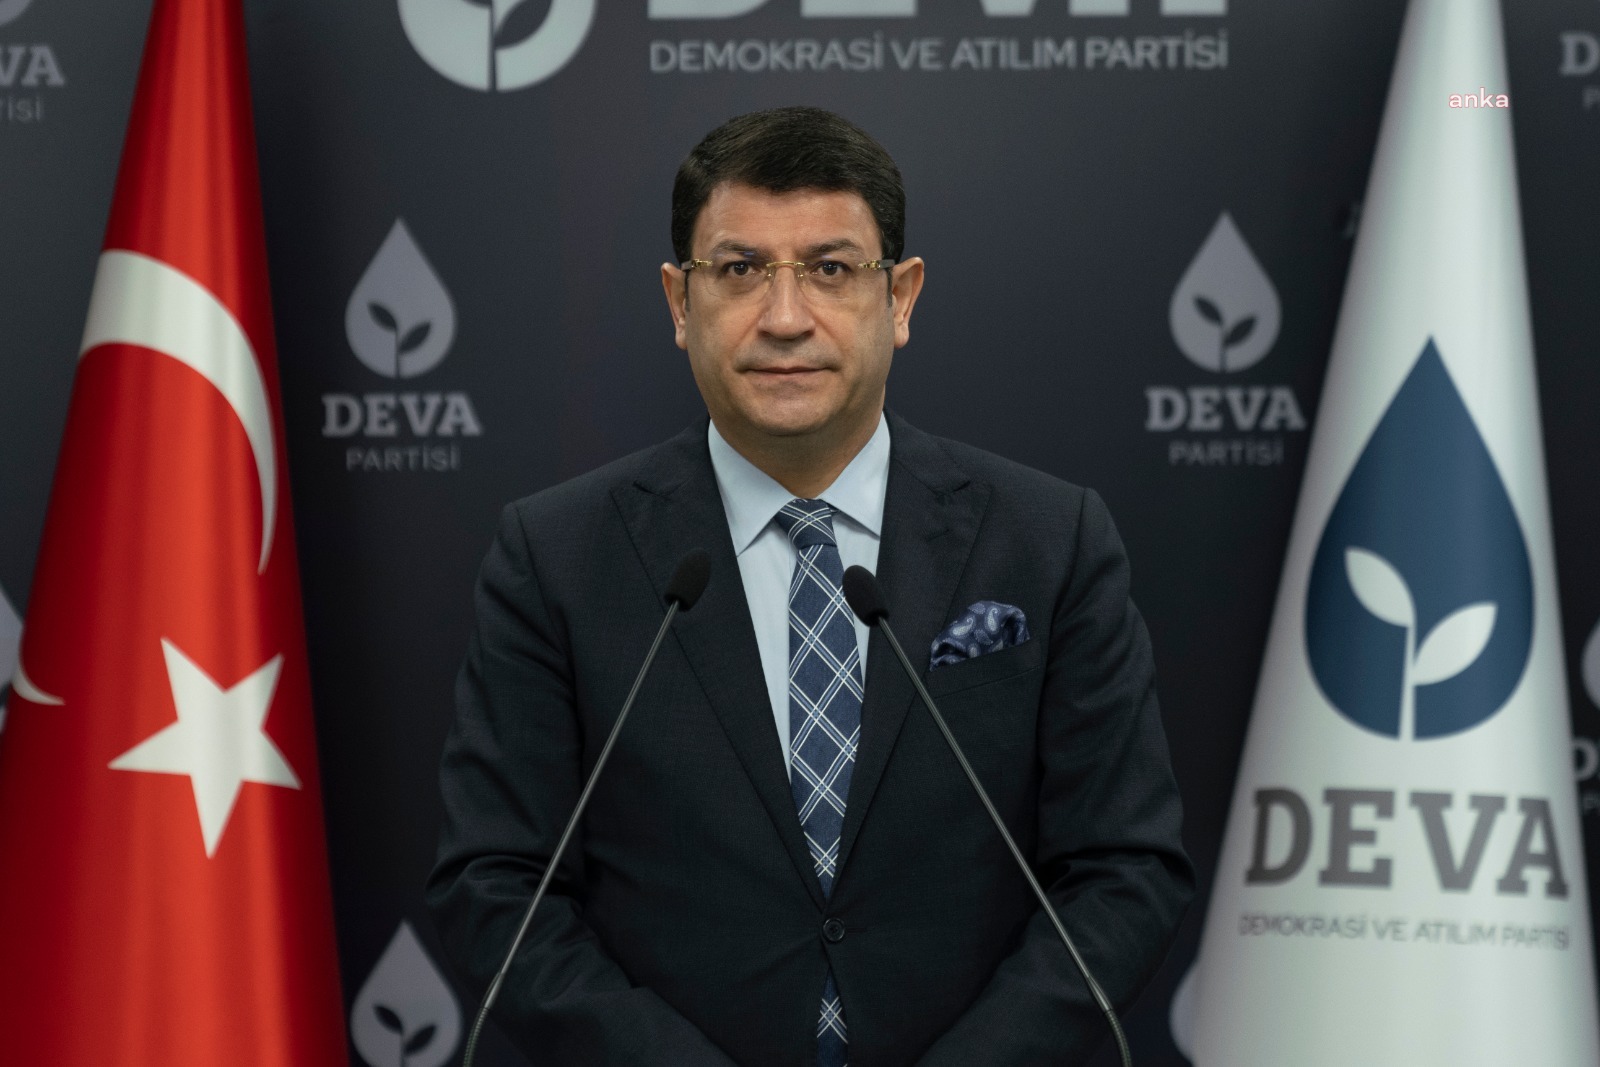 DEVA Partisi'nden Muharrem Sarıkaya'nın "CHP'den 5 vekil daha istiyor" iddiasına yalanlama